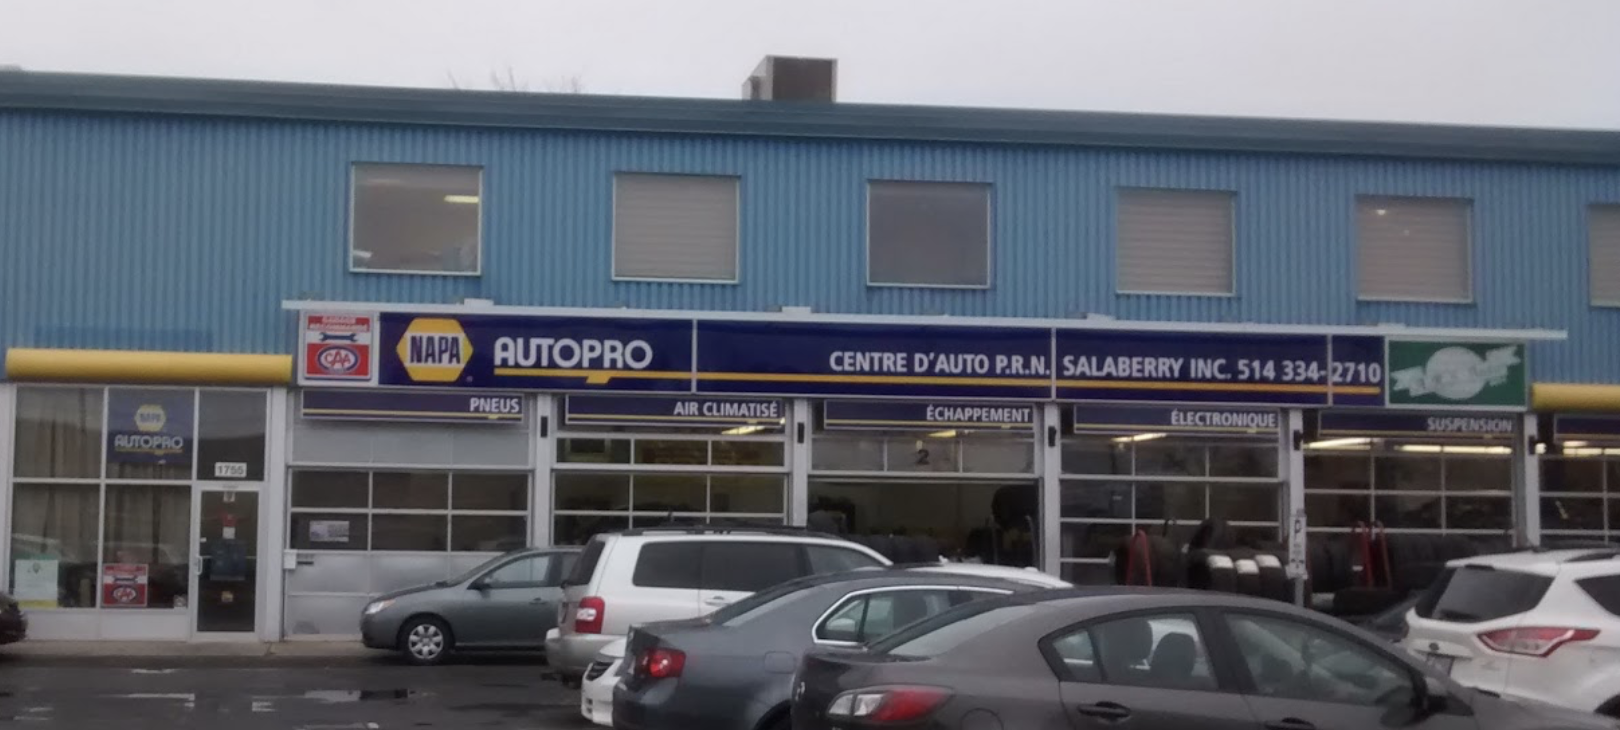 NAPA AUTOPRO - Centre D'Auto P.R.N. Salaberry Inc